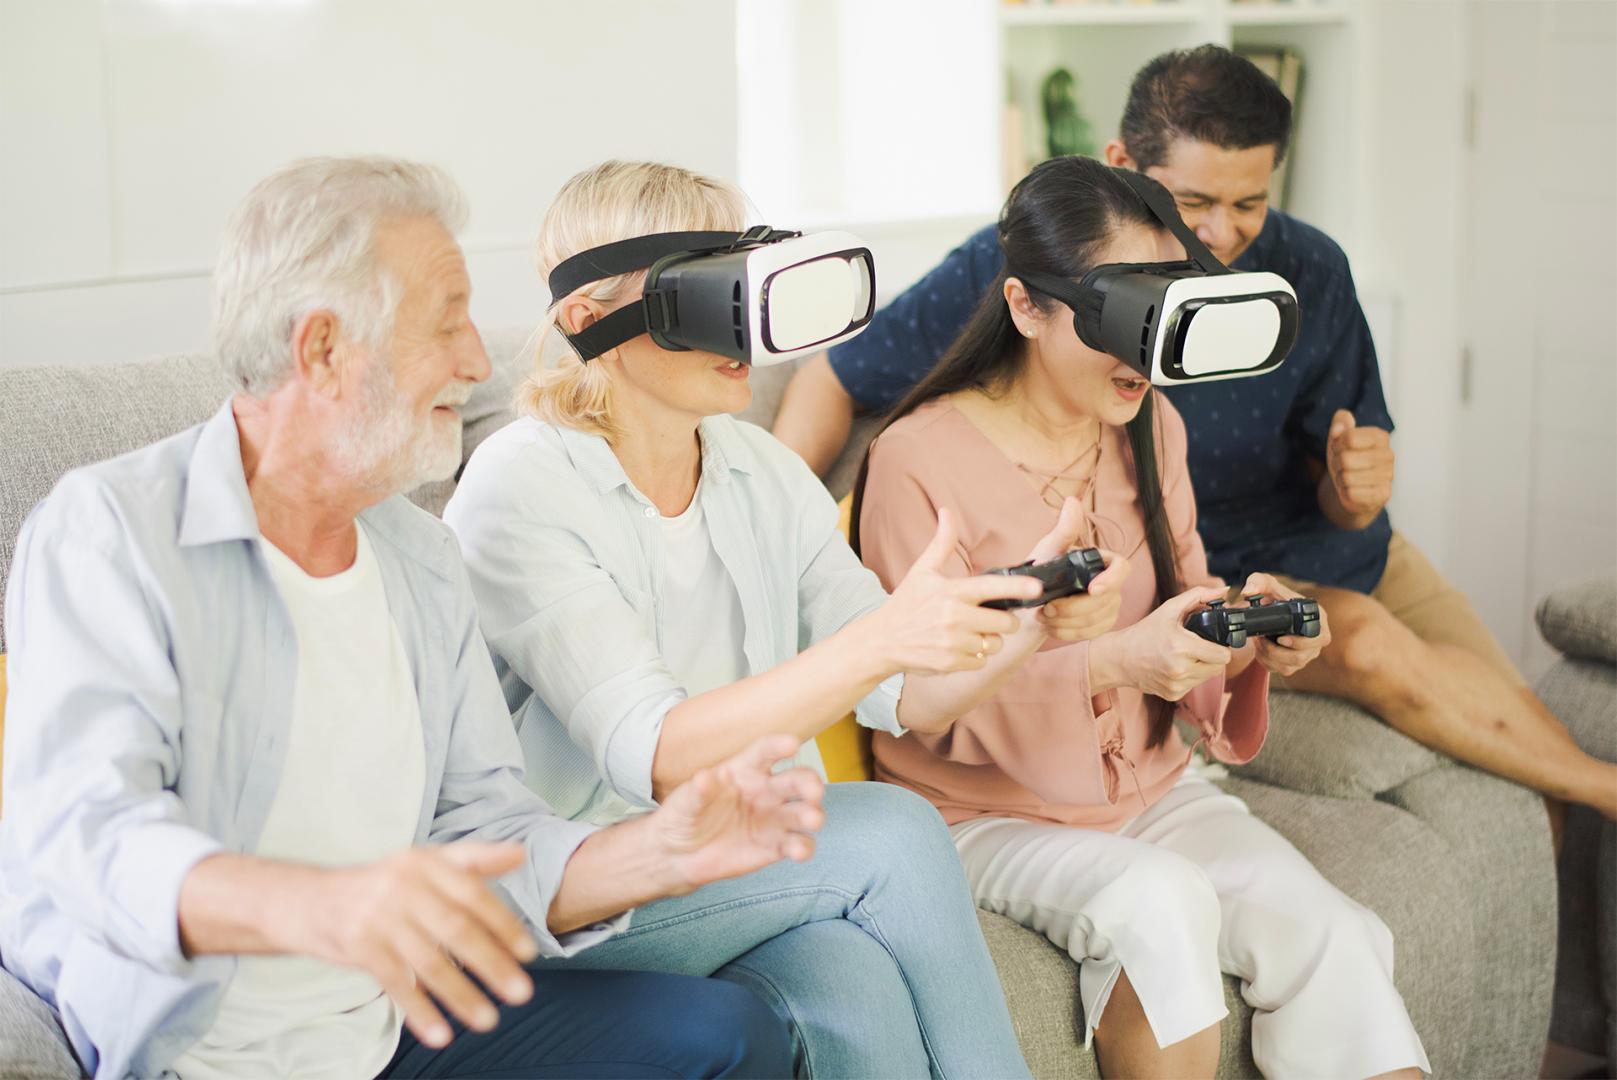 Personengruppe auf Sofa spielen mit VR-Brillen an einer Konsole